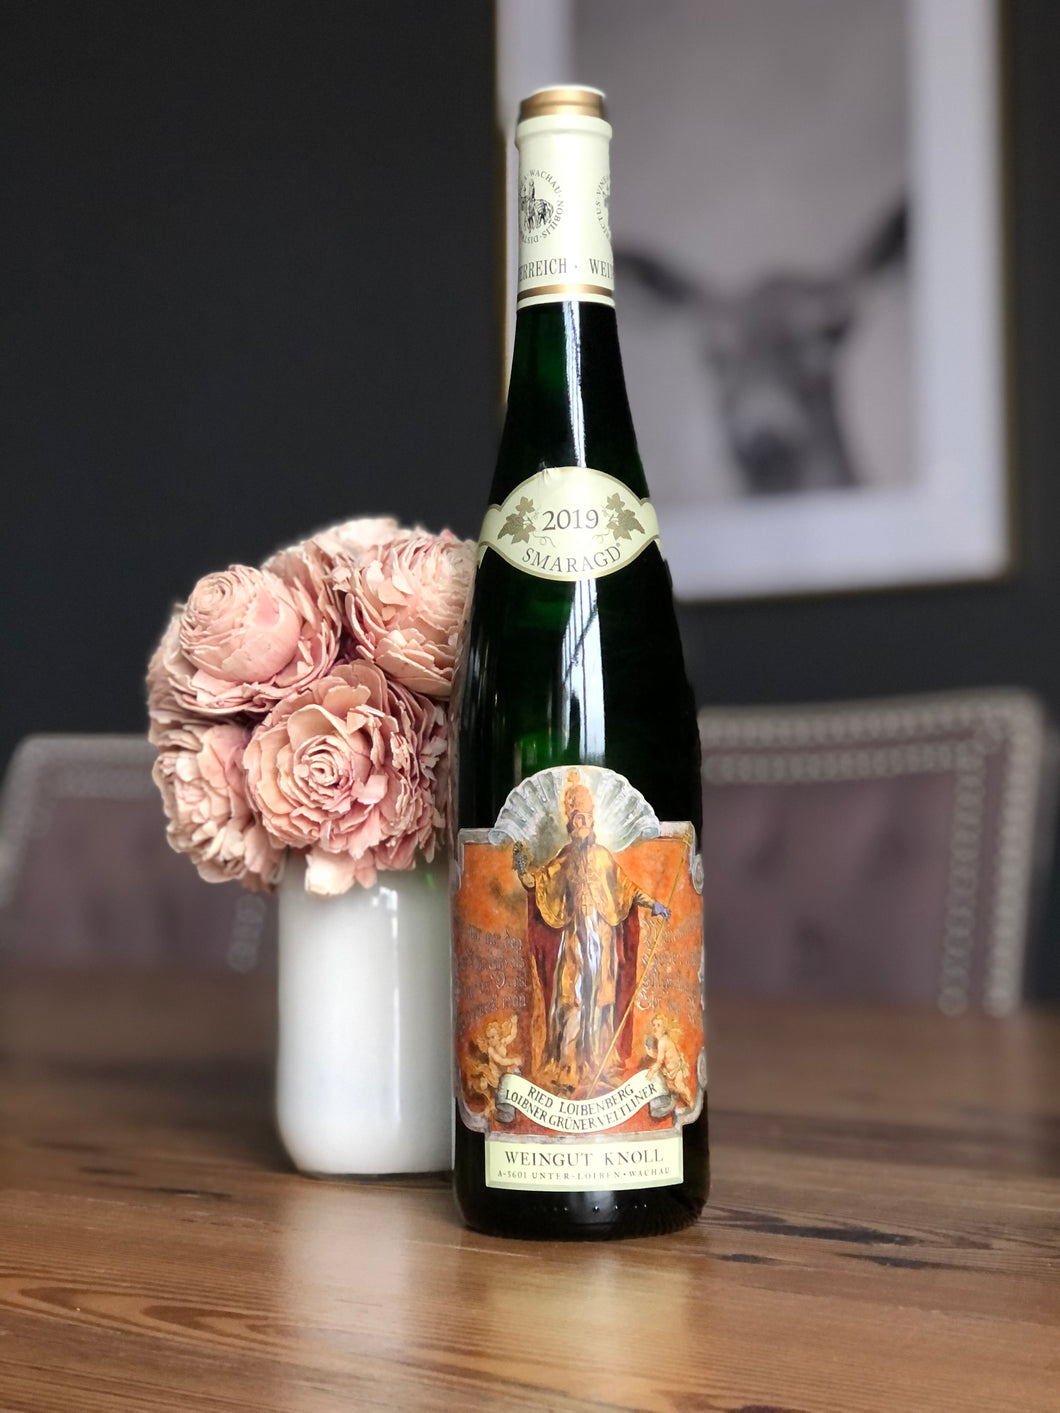 Weingut Knoll Ried Loibenberg Loibner Grüner Veltliner Smaragd, 2019